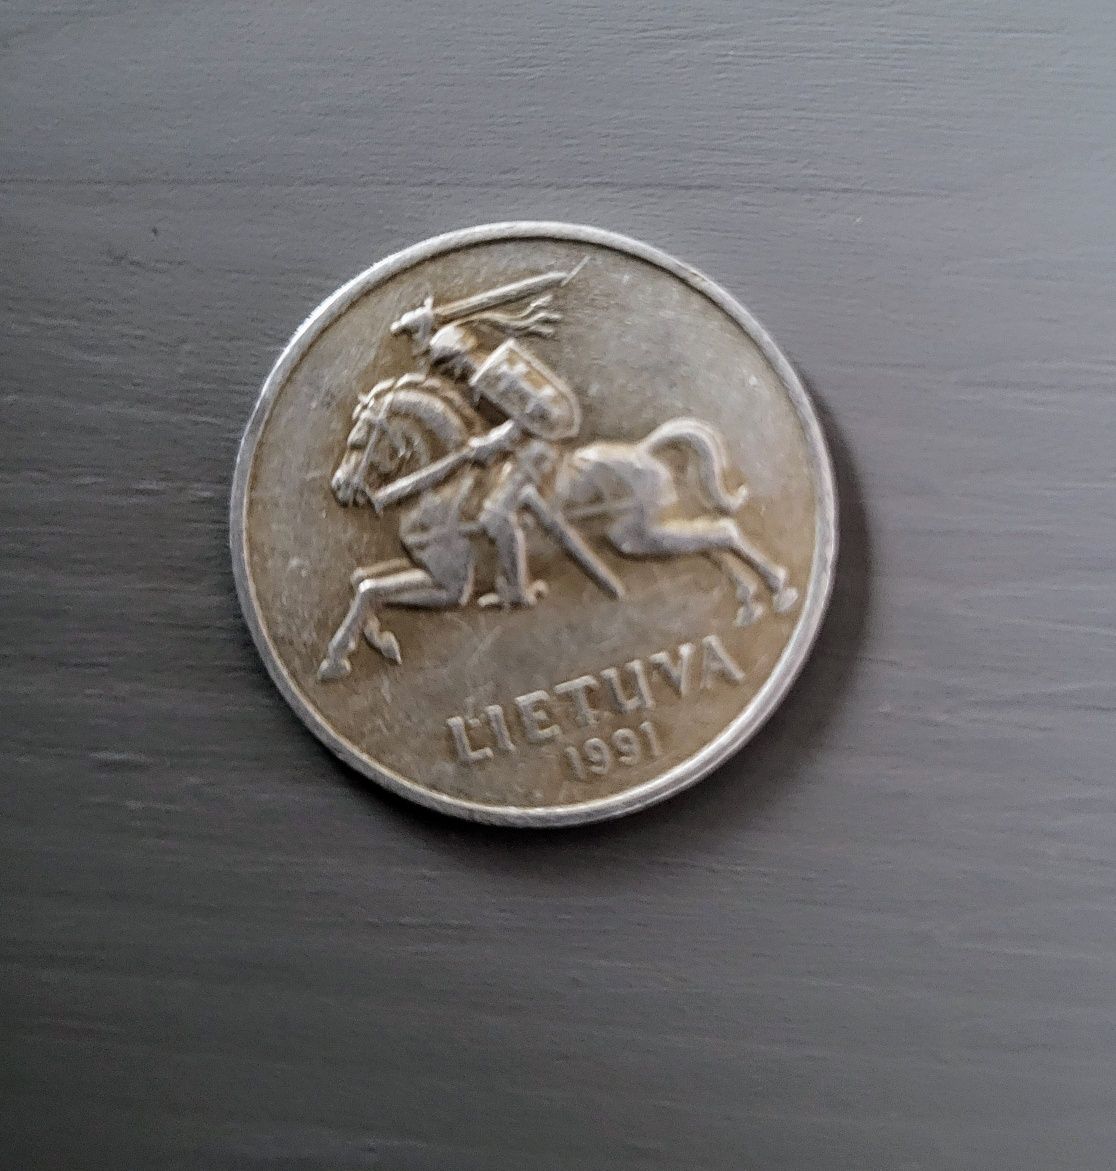 2 Centai litewska kolekcjonerska moneta